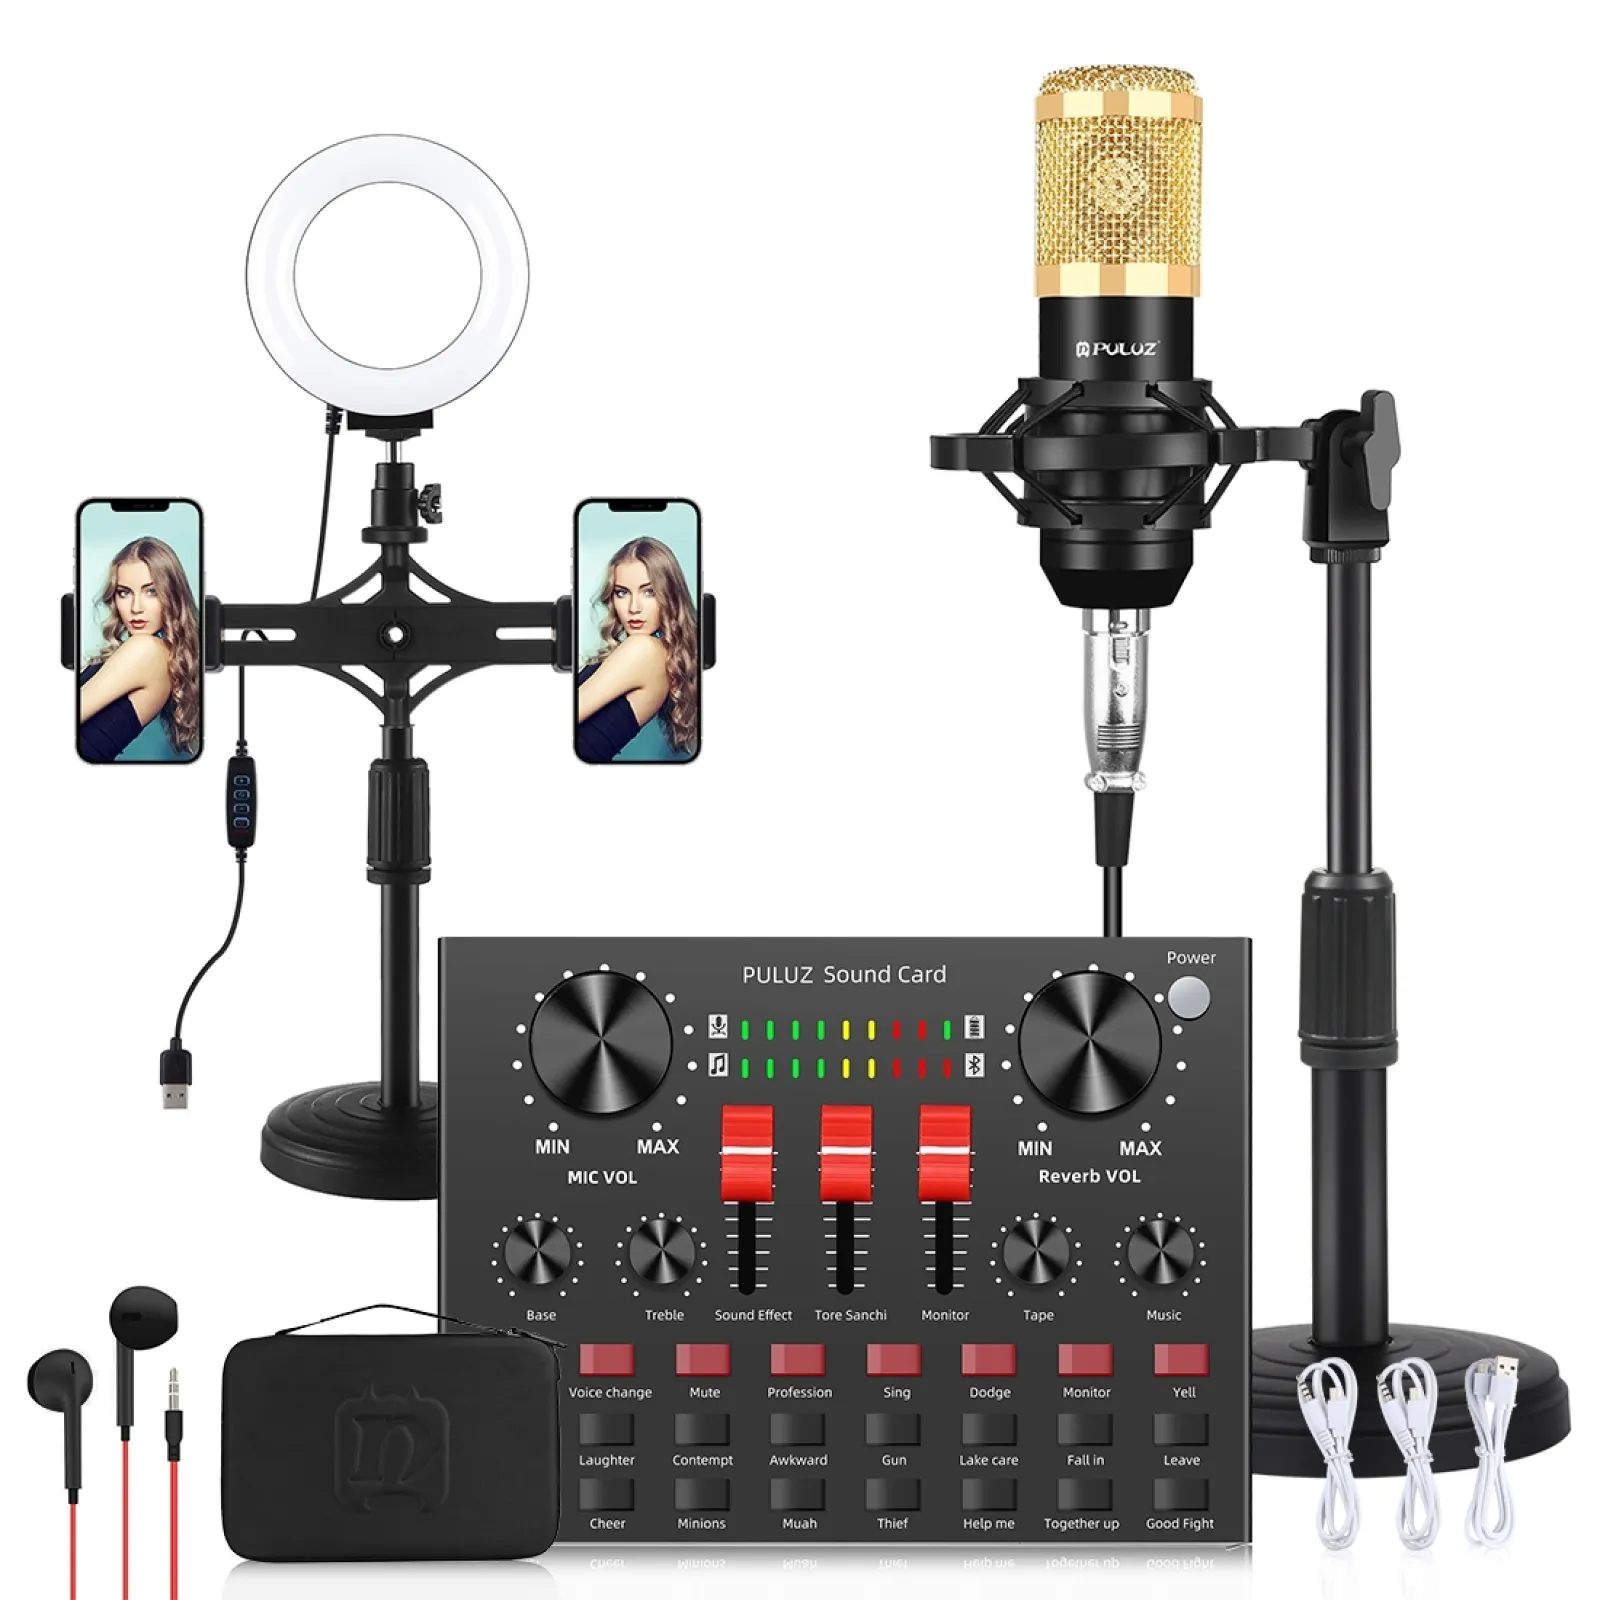 Novo profissional online de transmissão suporte para microfone, placa de som ao vivo kits de mixer de rádio e tv fm transmissão barata